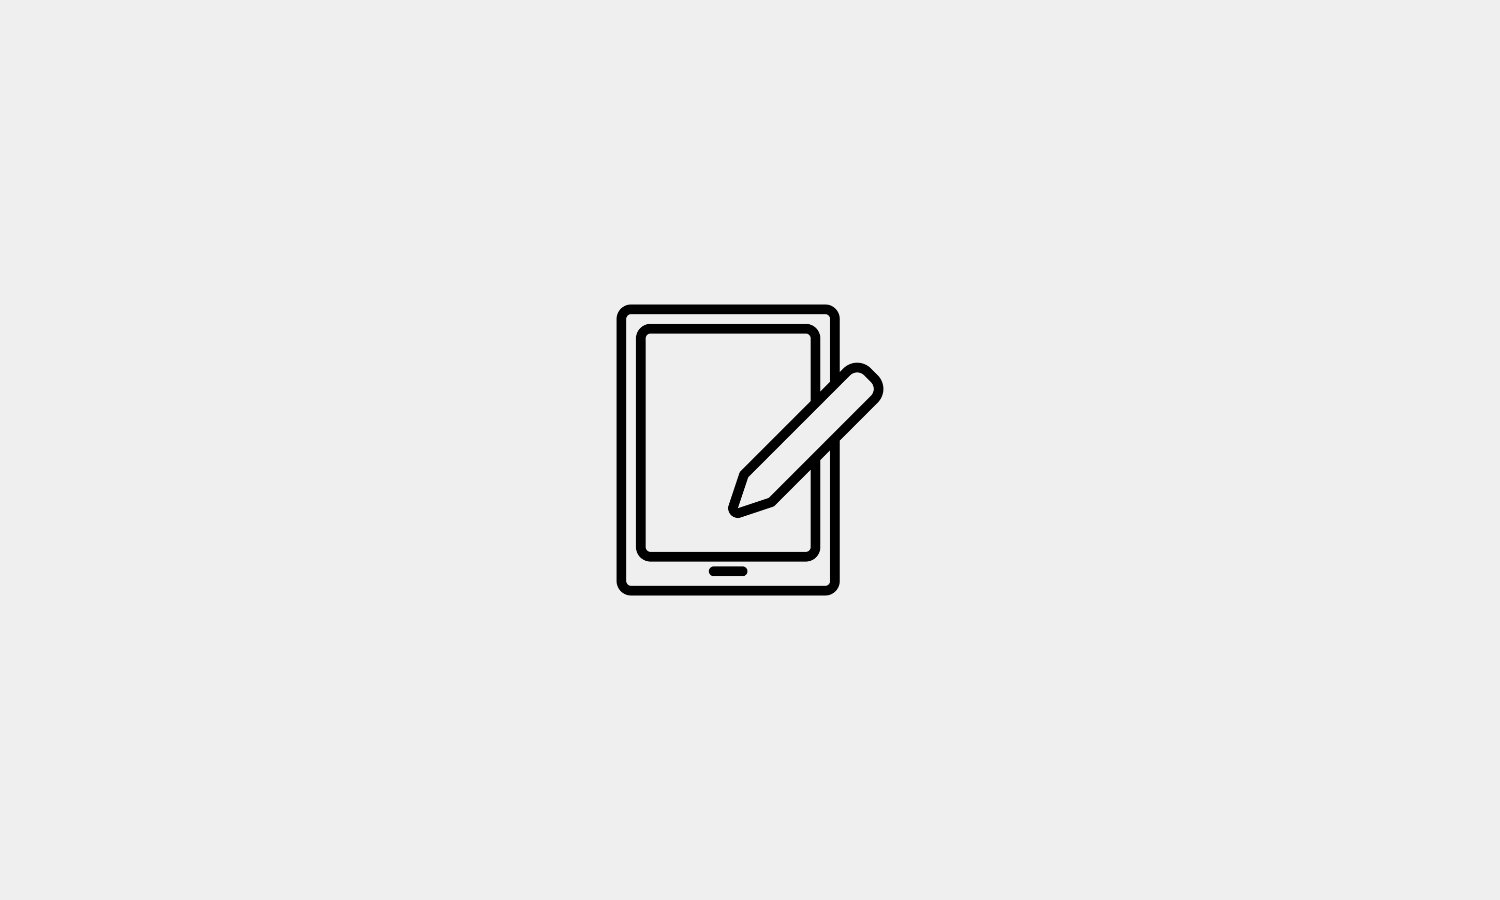 A minimalist tablet illustration